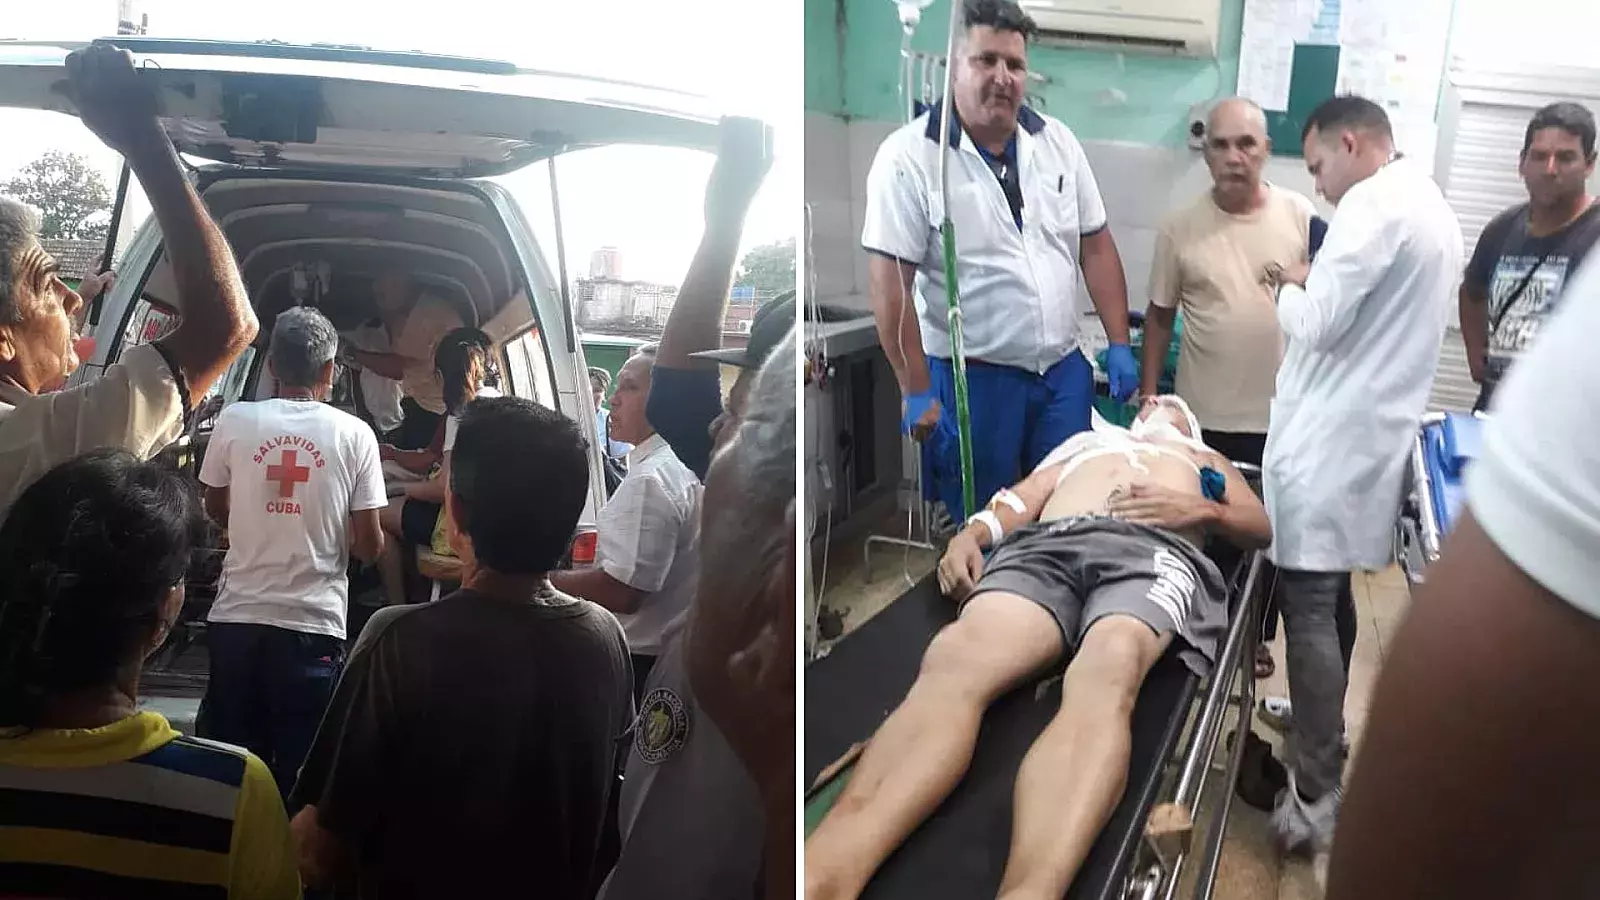 Atropello deja 5 heridos en Güira de Melena, Artemisa